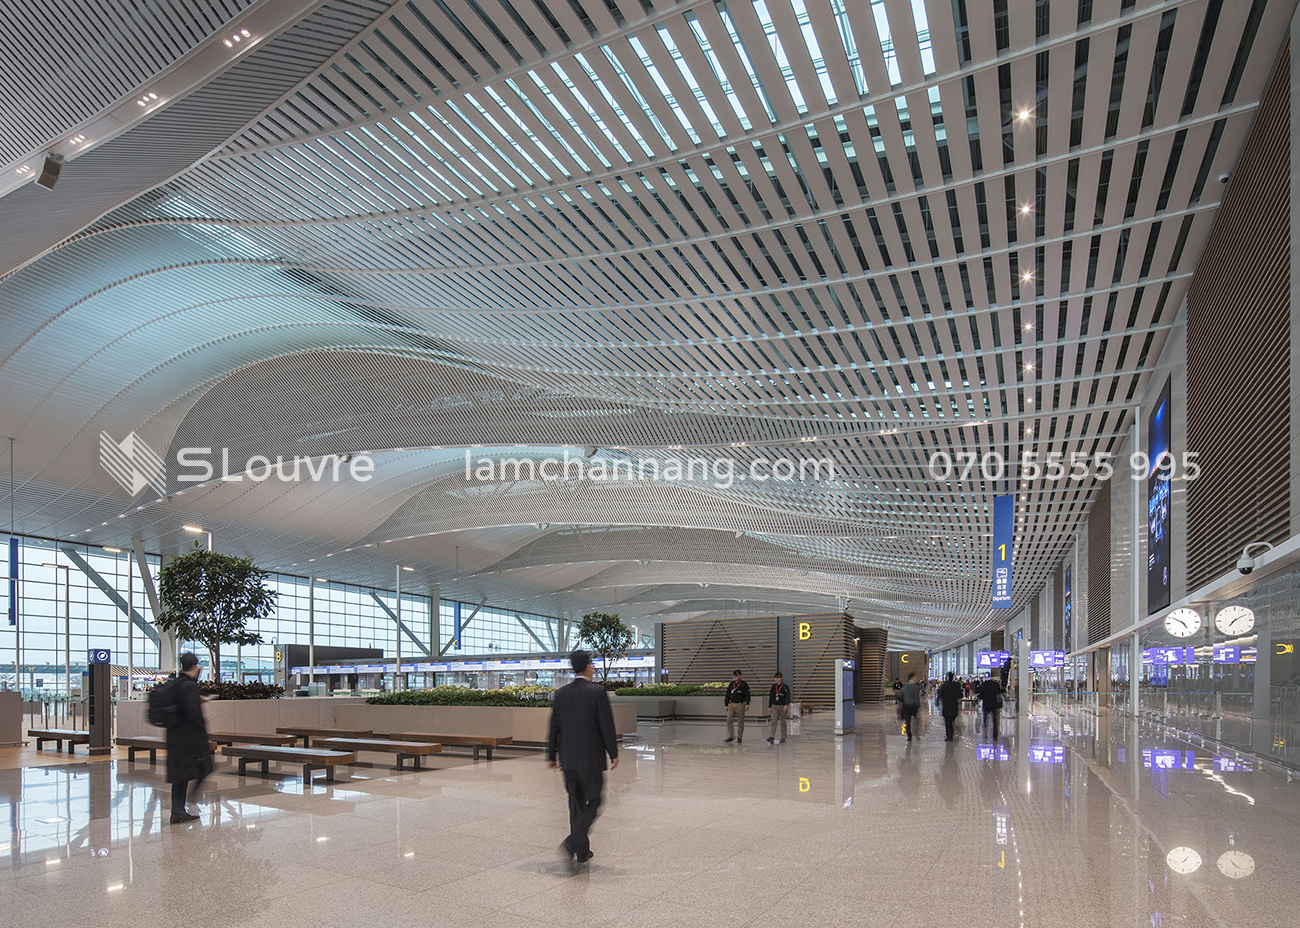 tran-nhom-san-bay-airport-aluminium-ceiling-7